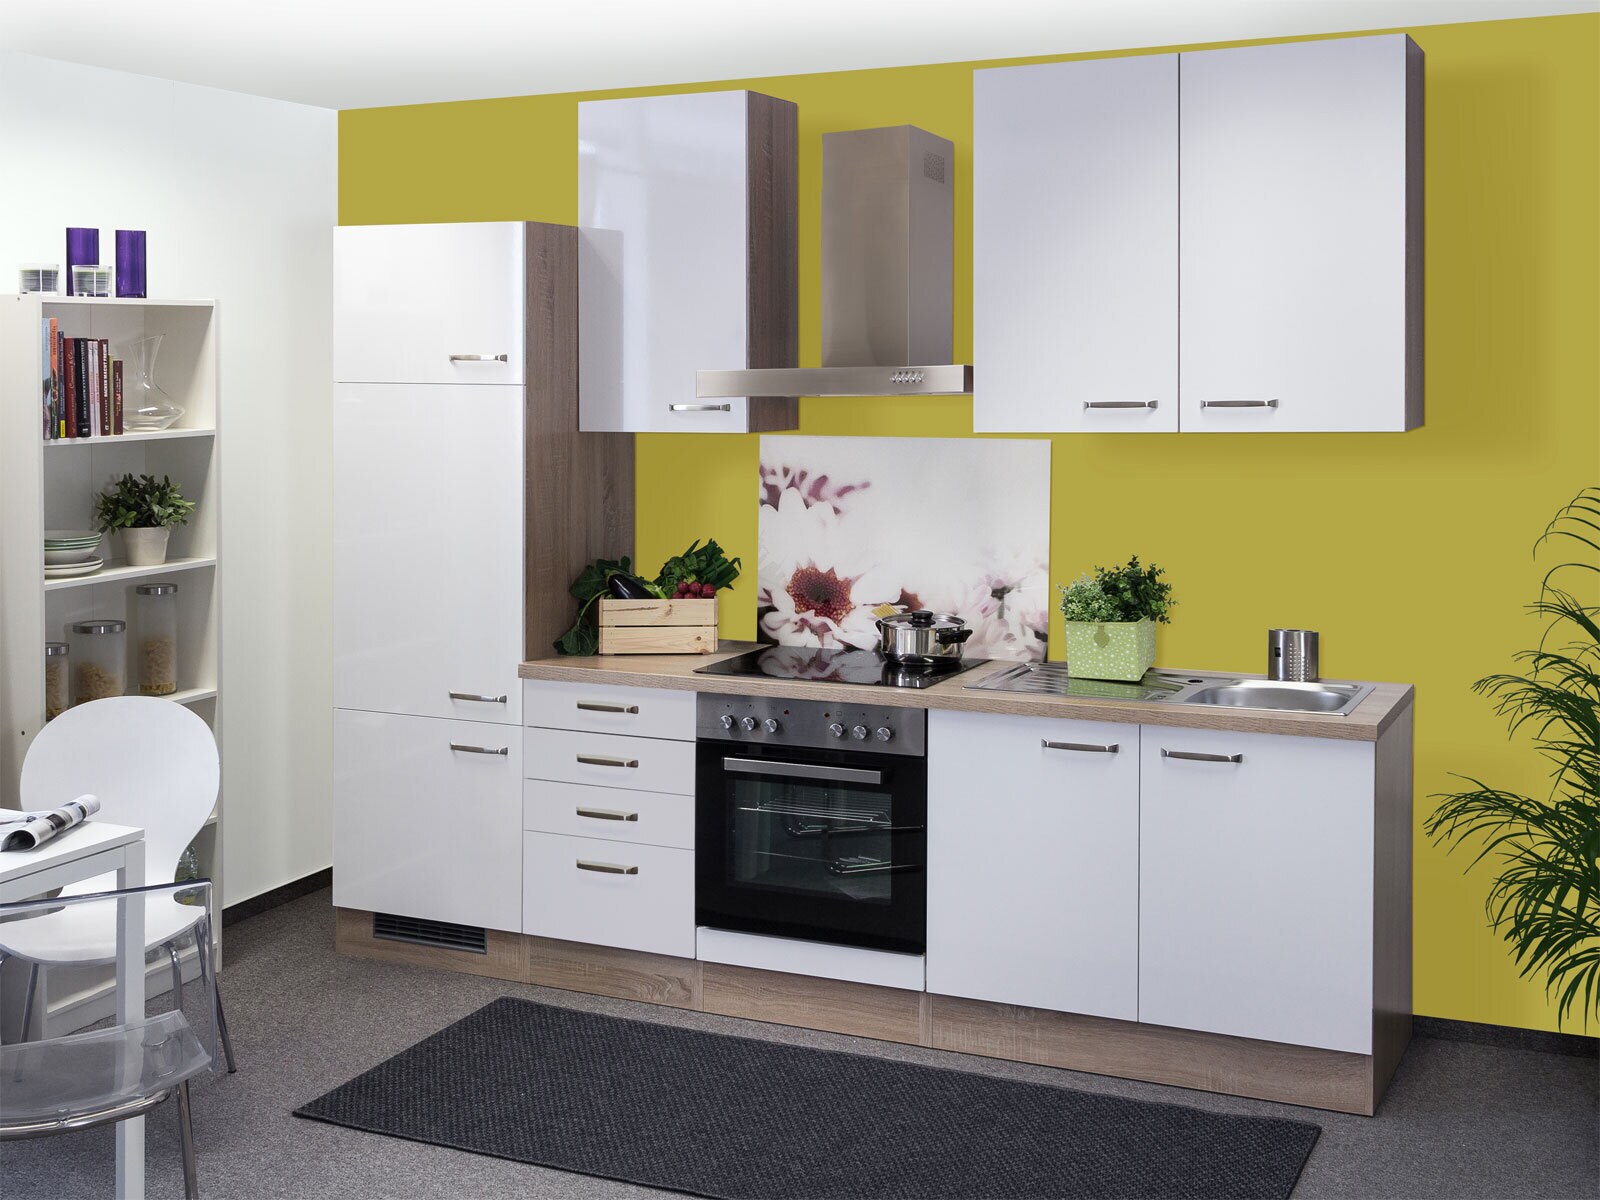 Küchenblock Valero Hochglanz Weiß / Eiche Sonoma inklusive E-Geräte